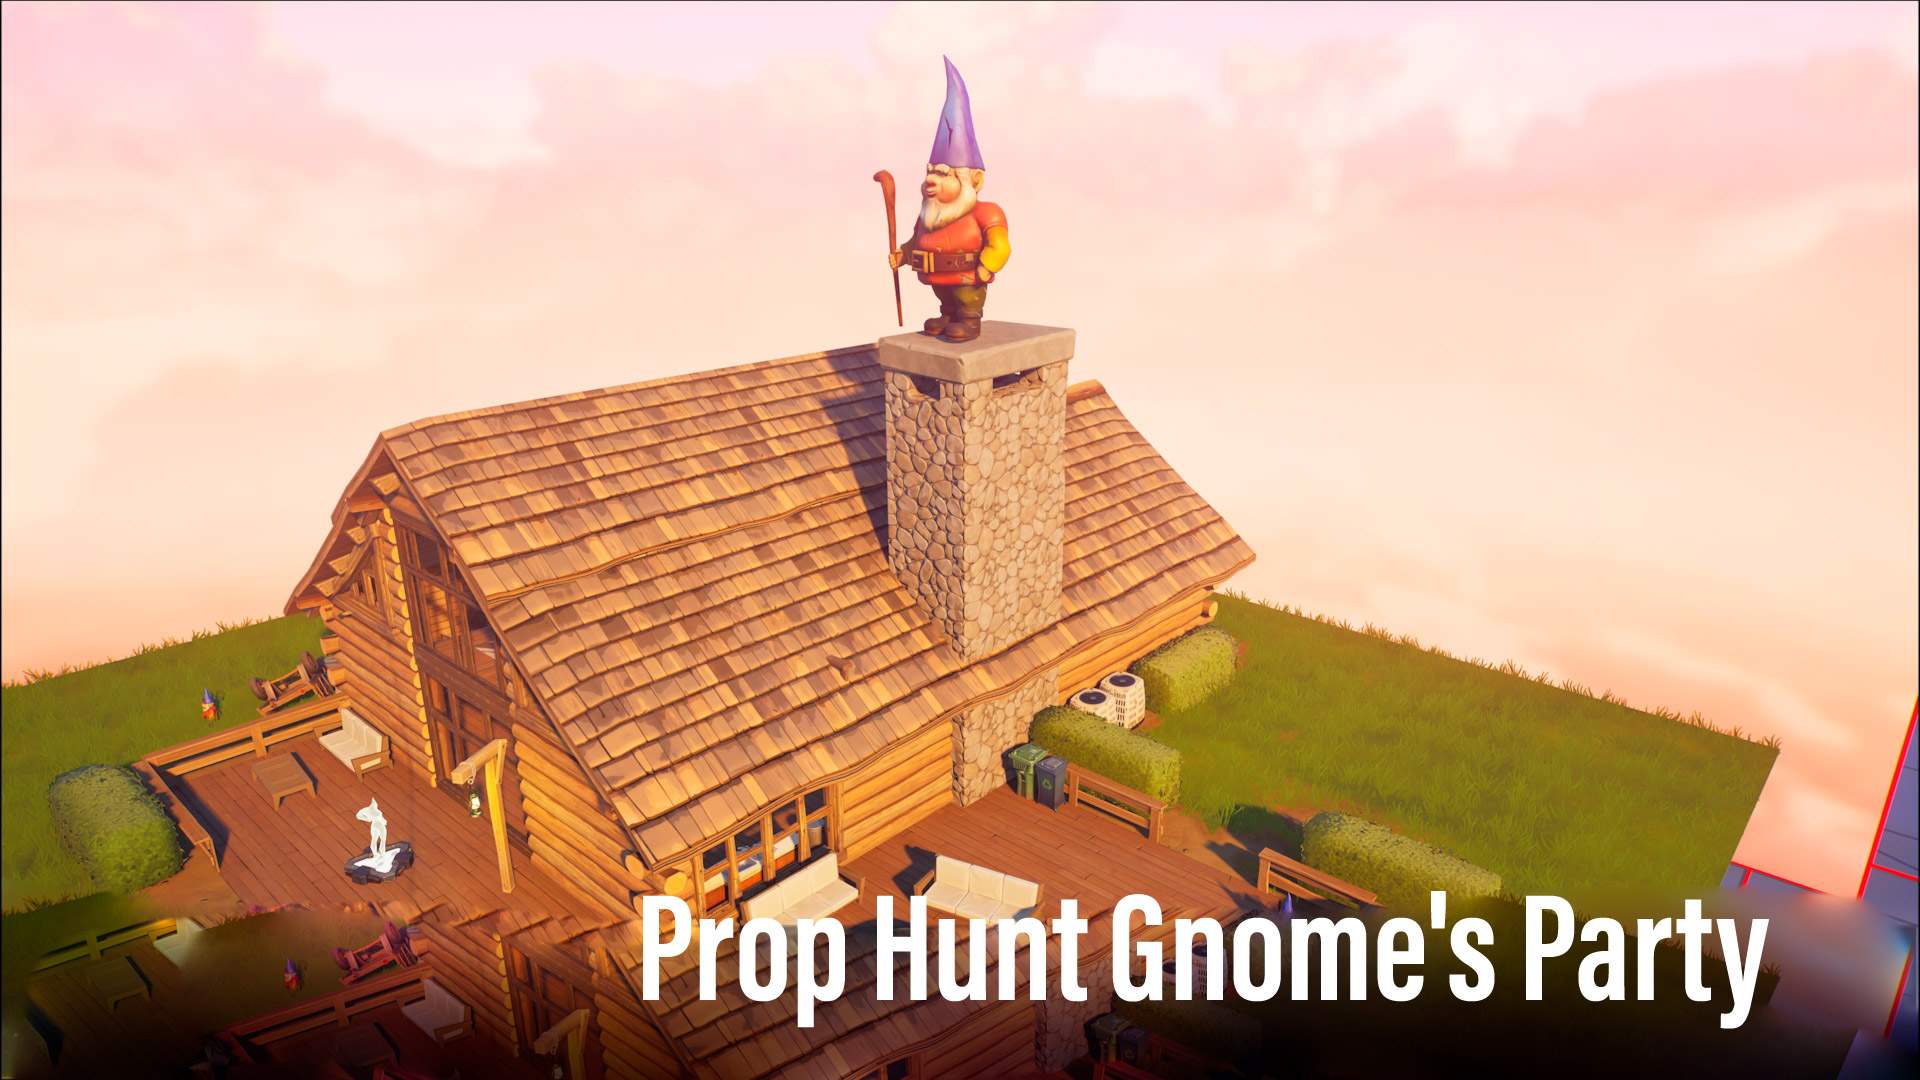 Prop hunt Gnome Garden